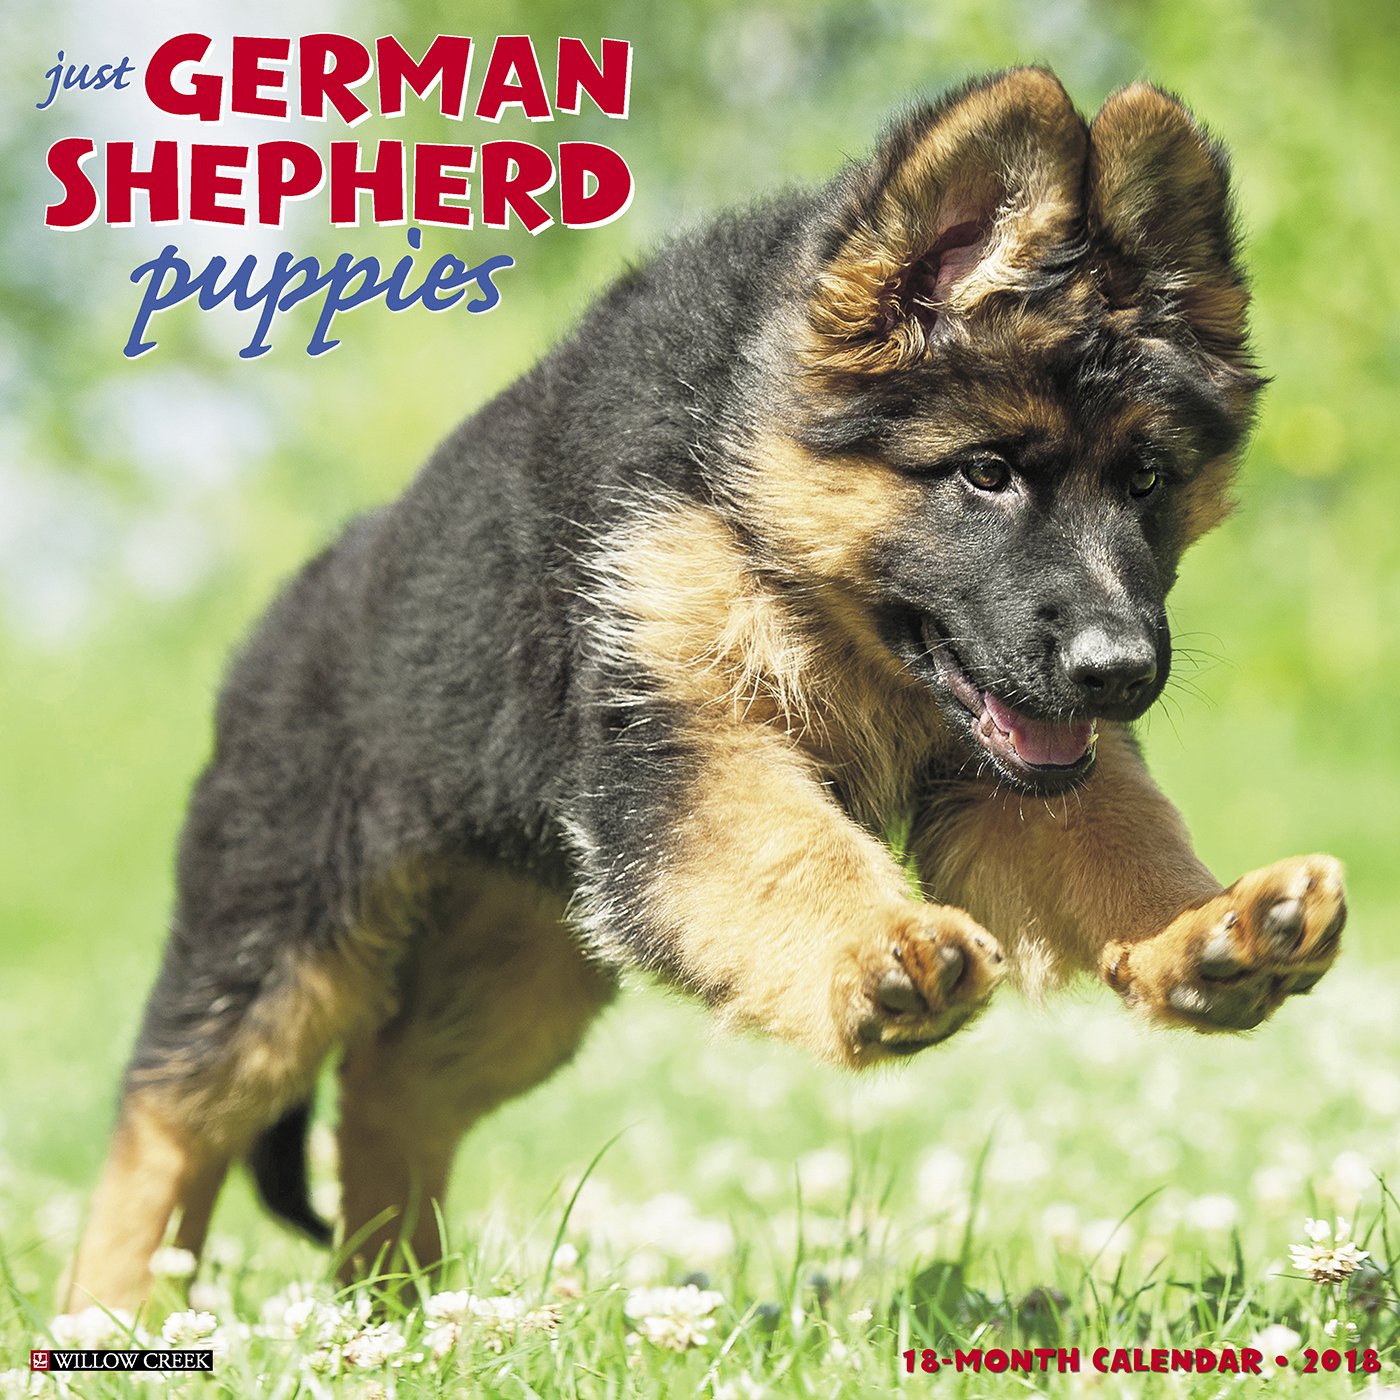 Just German Shepherd Puppies 2018 Calendar: Willow Creek Press ...